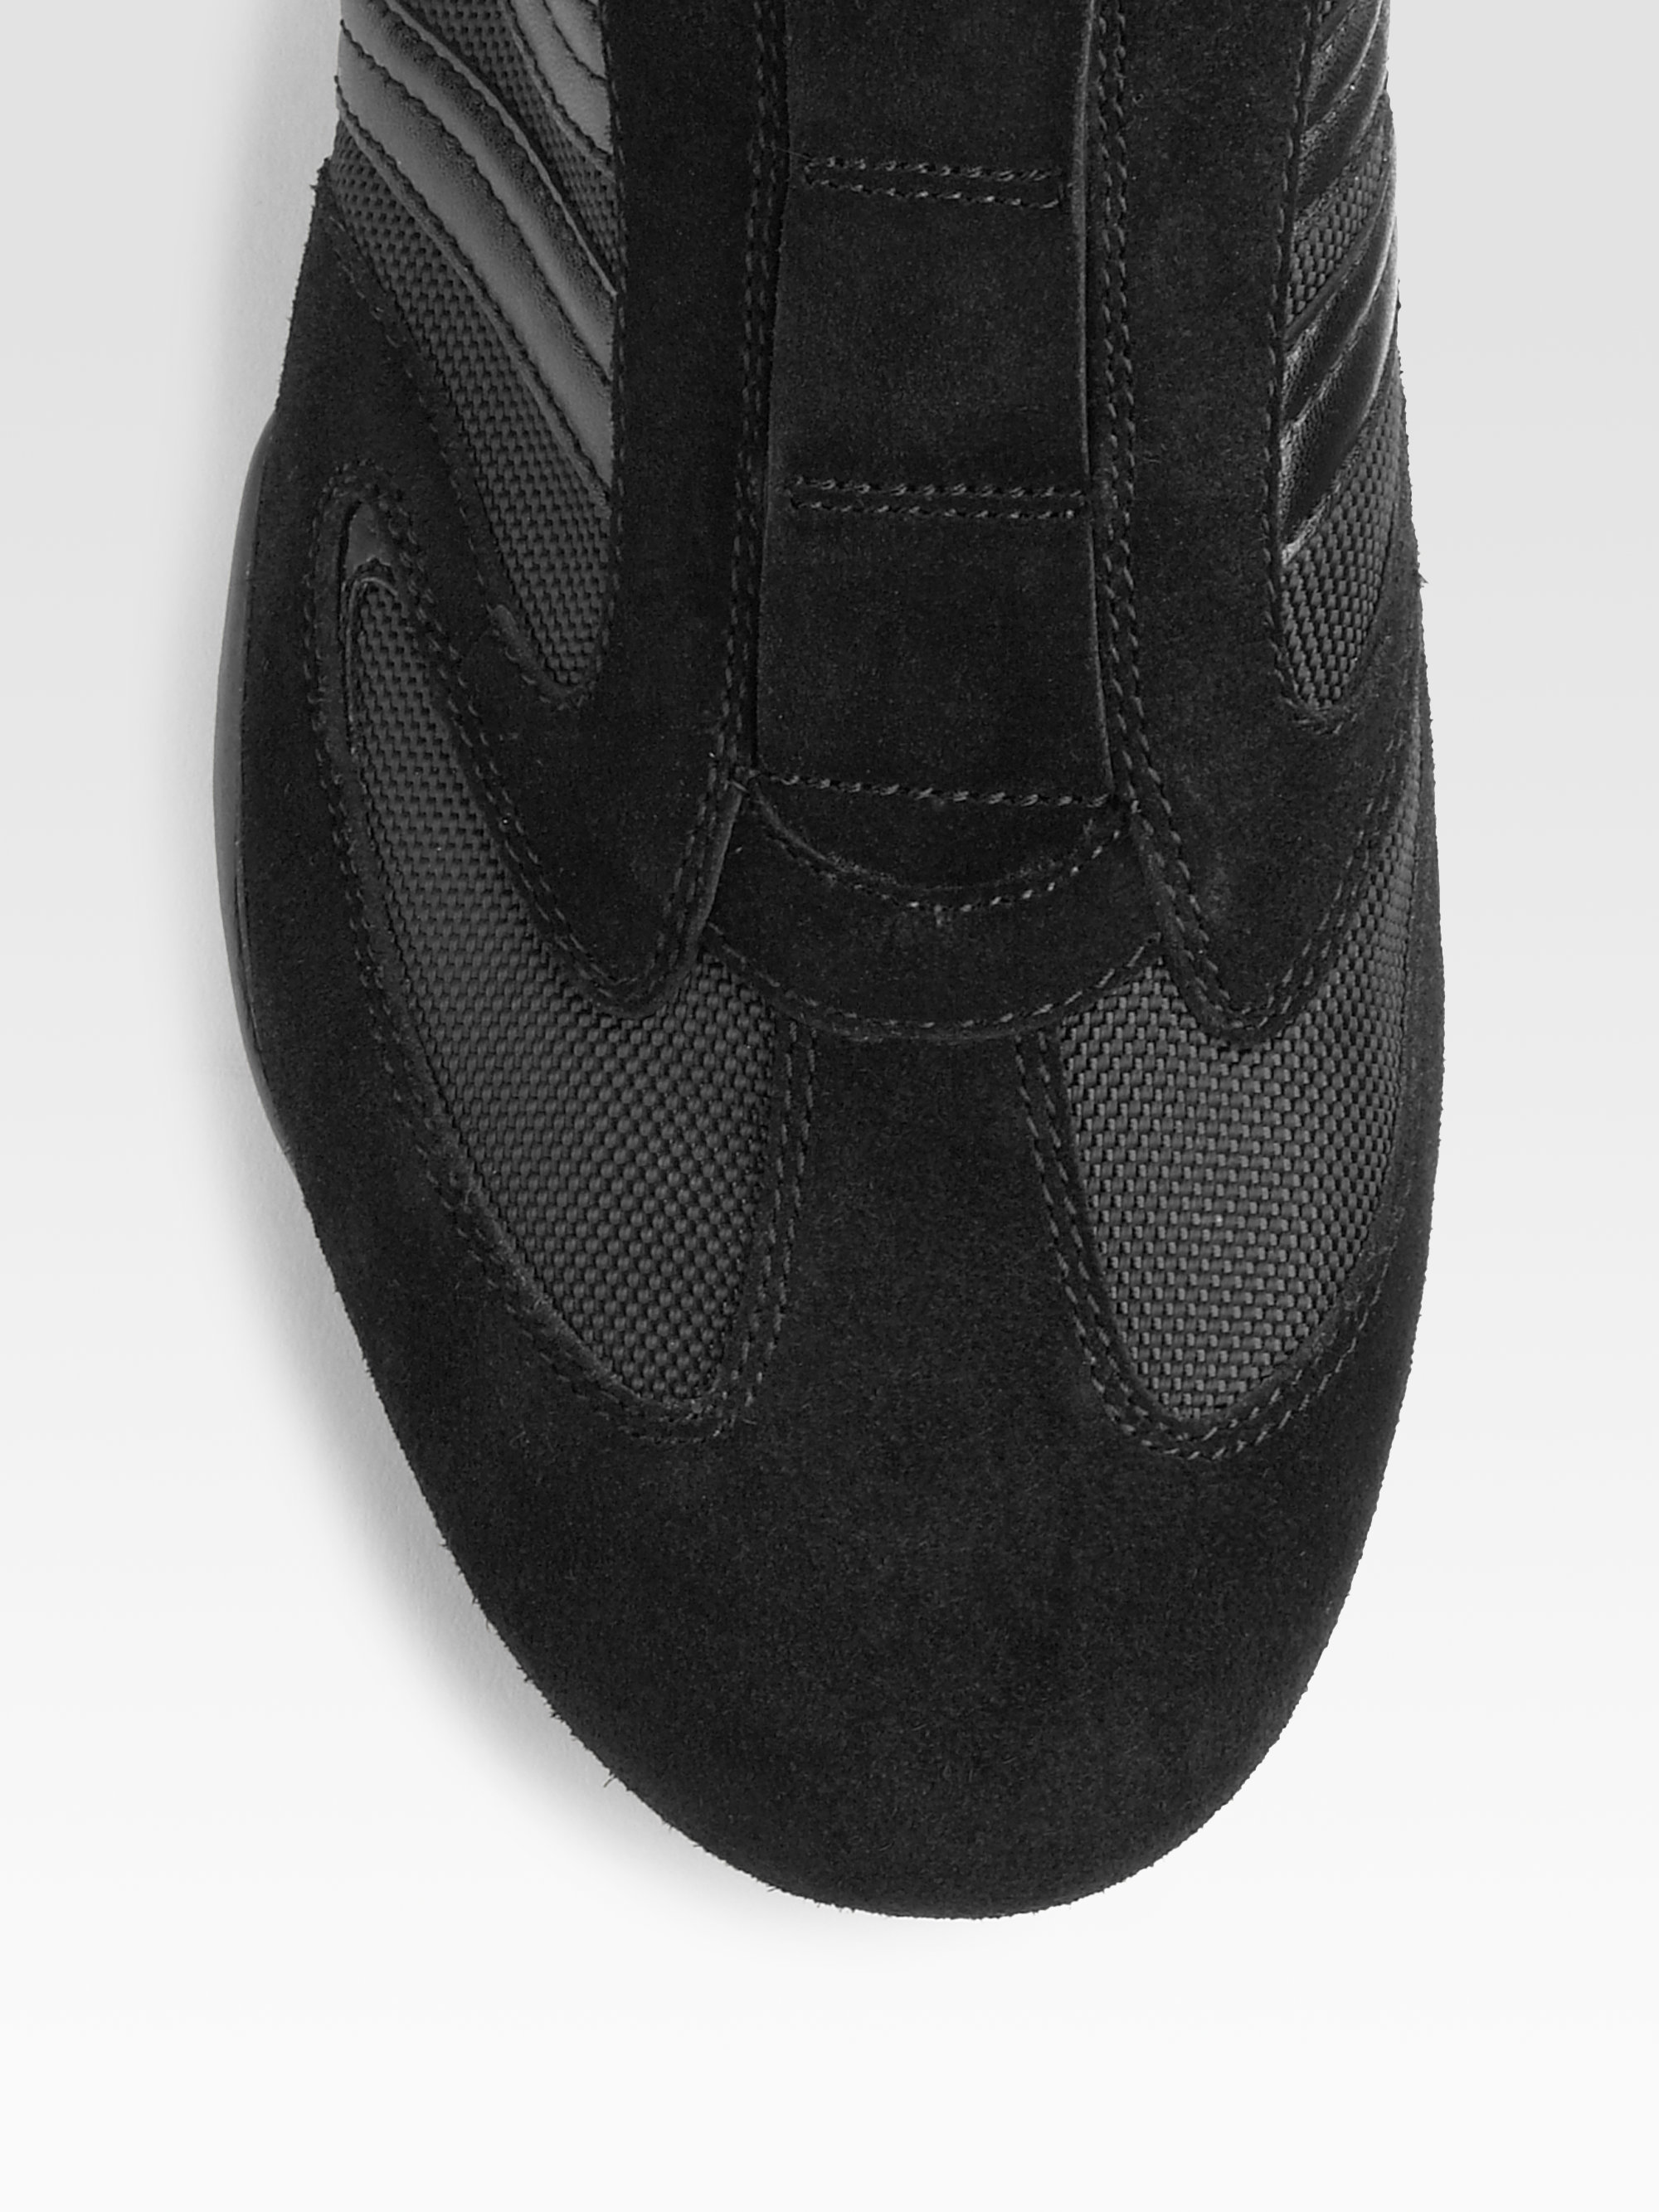 BOSS by HUGO BOSS Slip-on Sneakers in Black for Men | Lyst